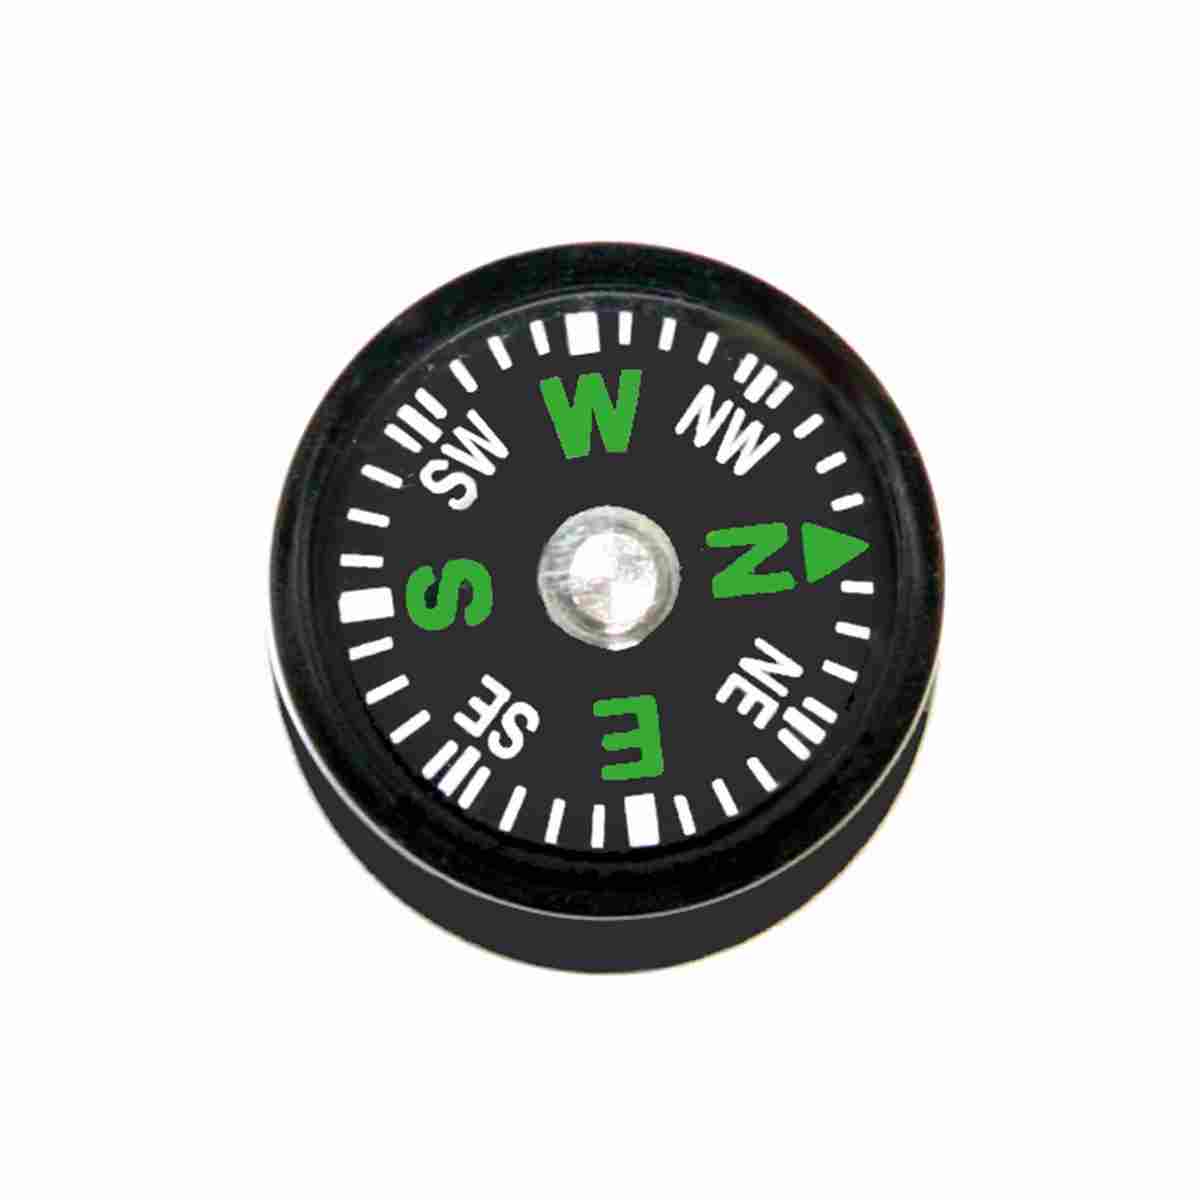 Kompass 2016 als Ersatzteil, mit Klebefolie für GPS- und Prismenstäbe